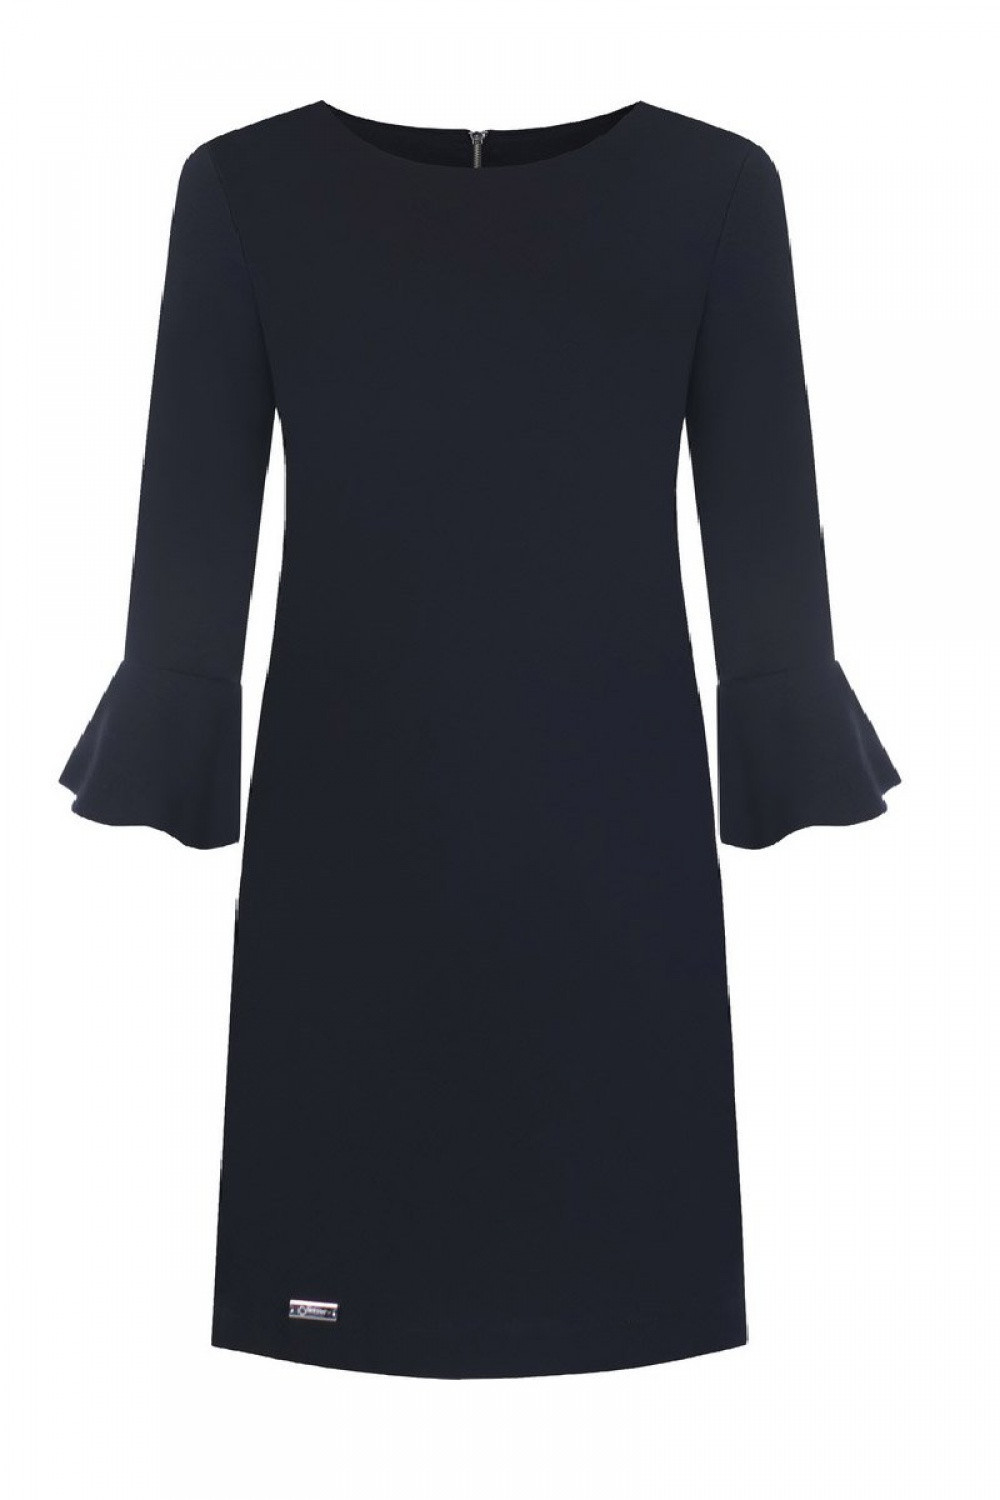 Společenské šaty Erin model 108527 - Jersa 44 černá